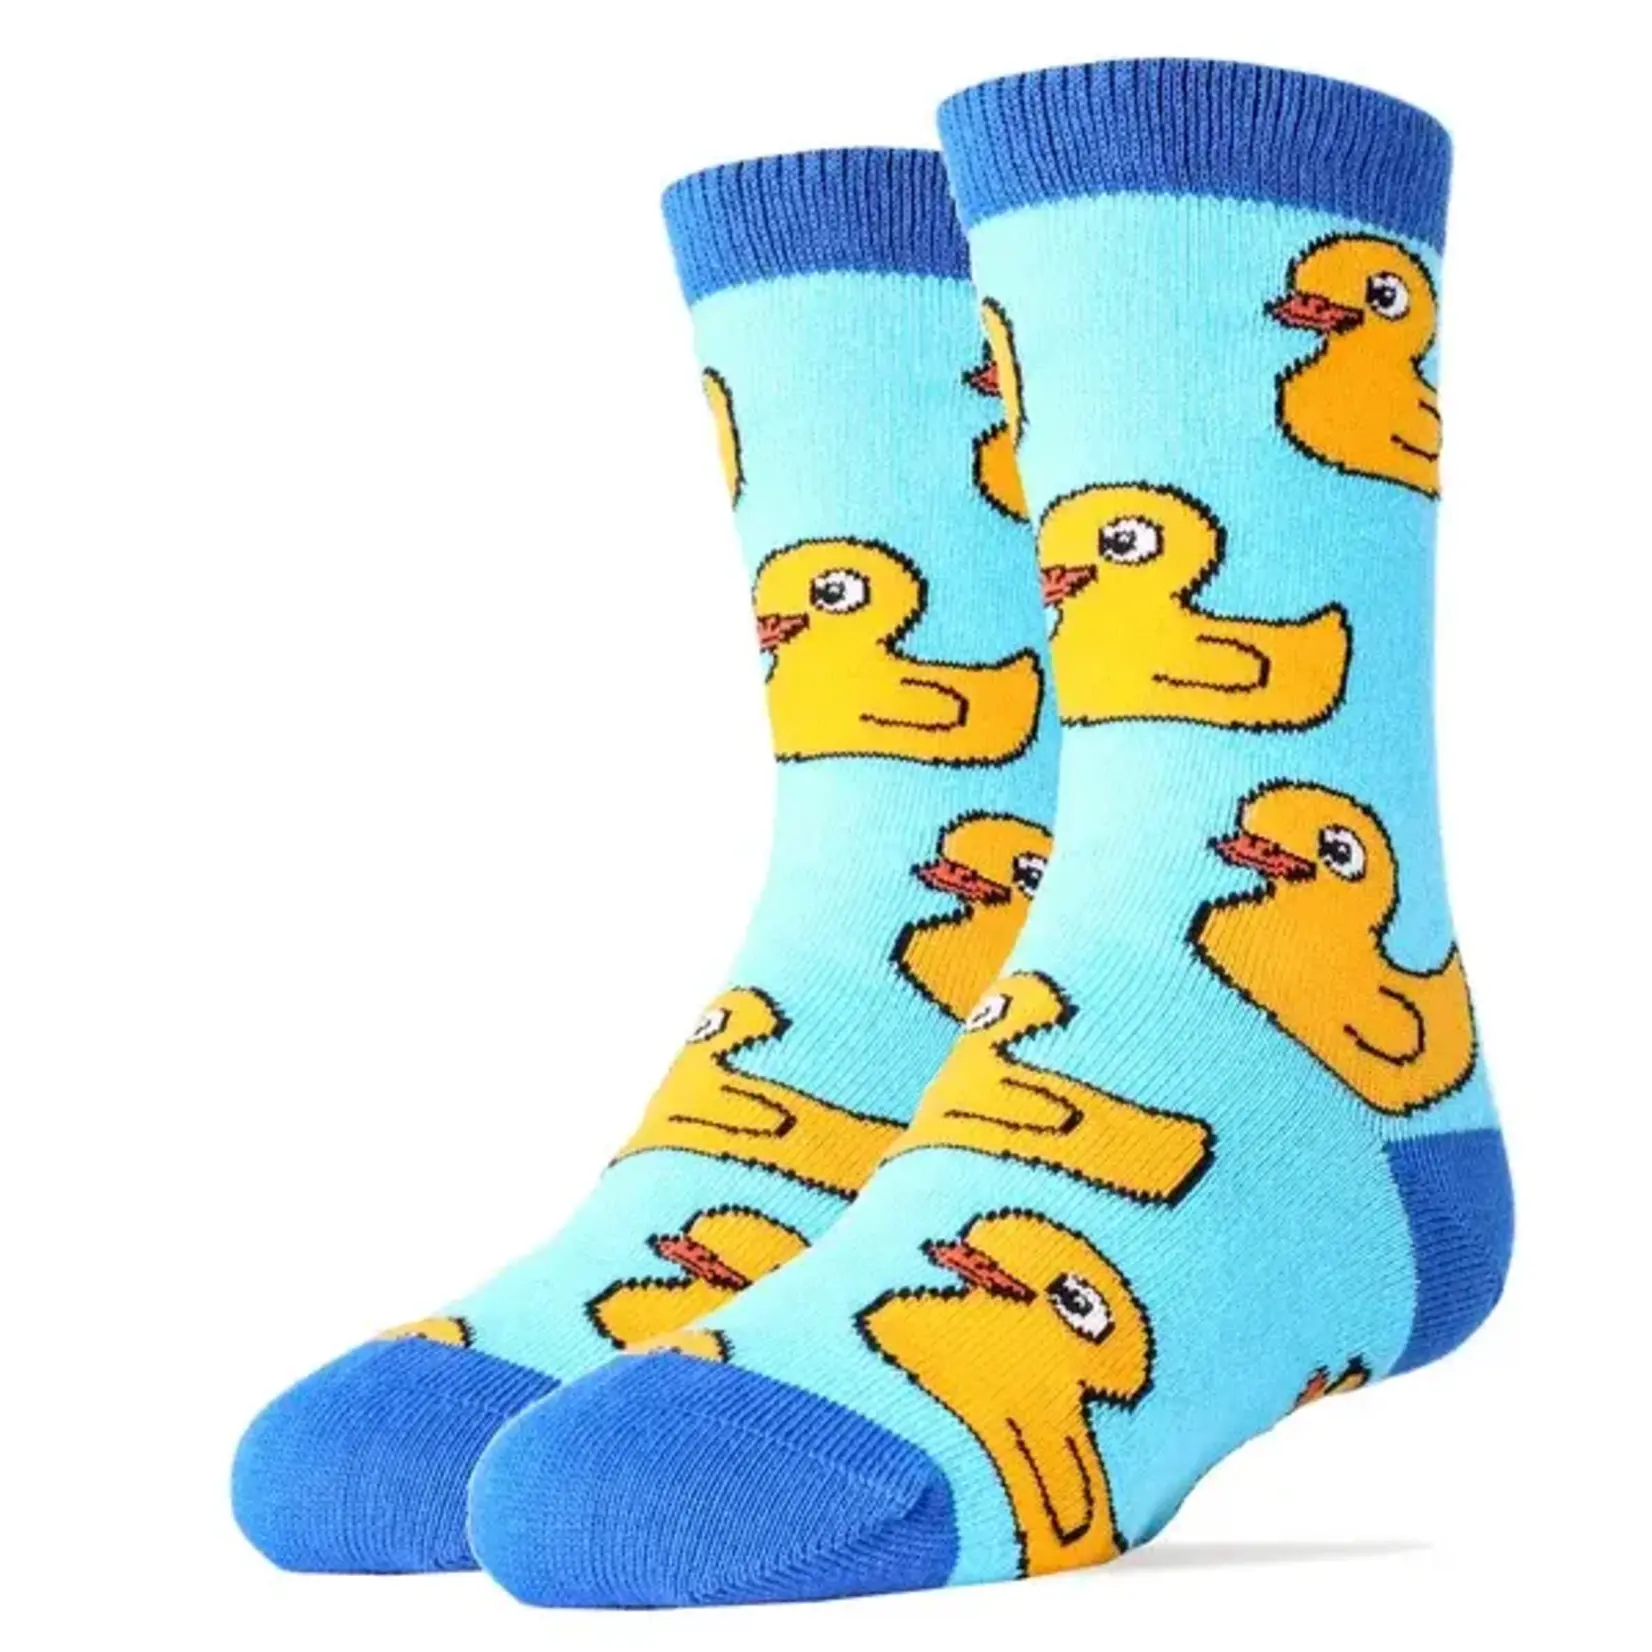 Socks (Kids) - Rubber Duckies